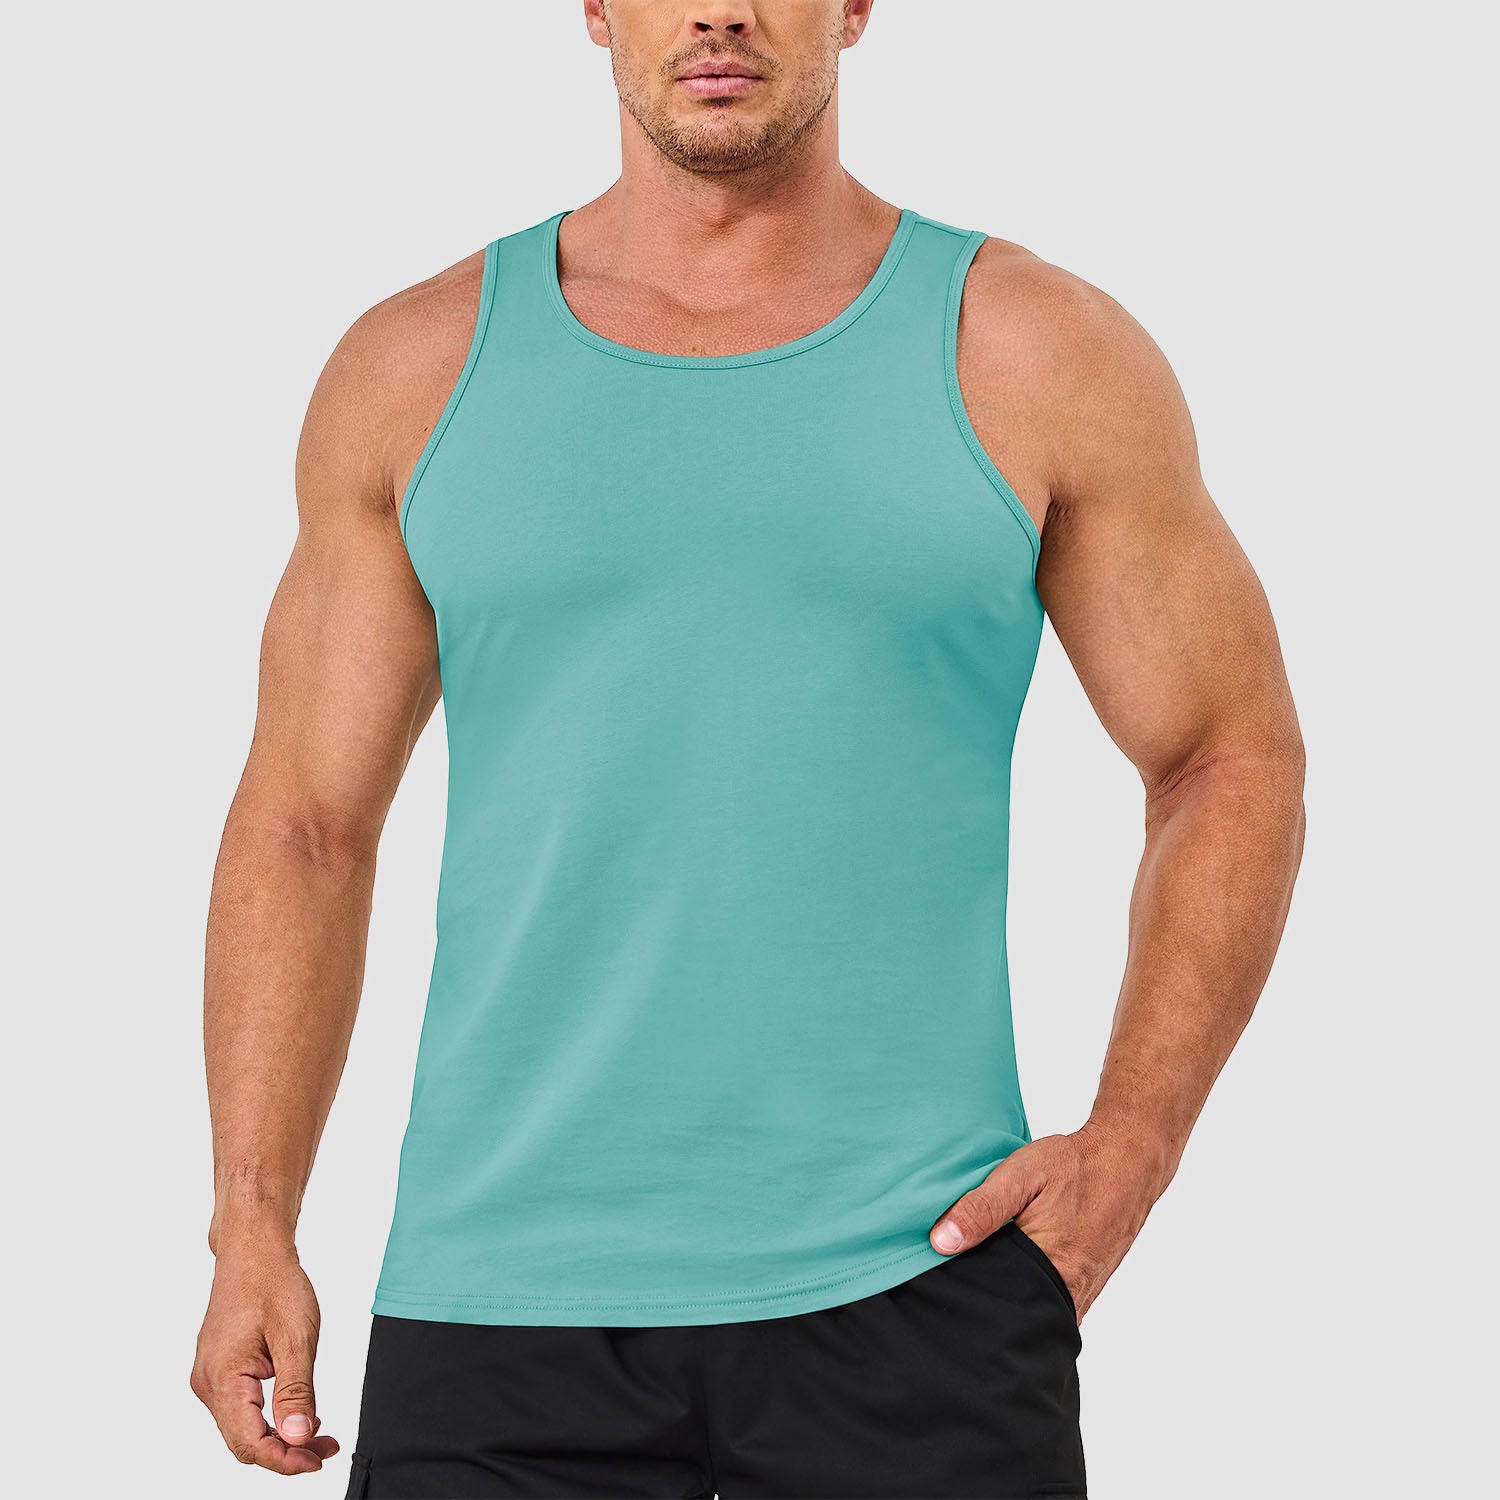 Men's Tank Top Cotton Sleeveless Shirt Lightweight Muscle Tank Tee Shirt